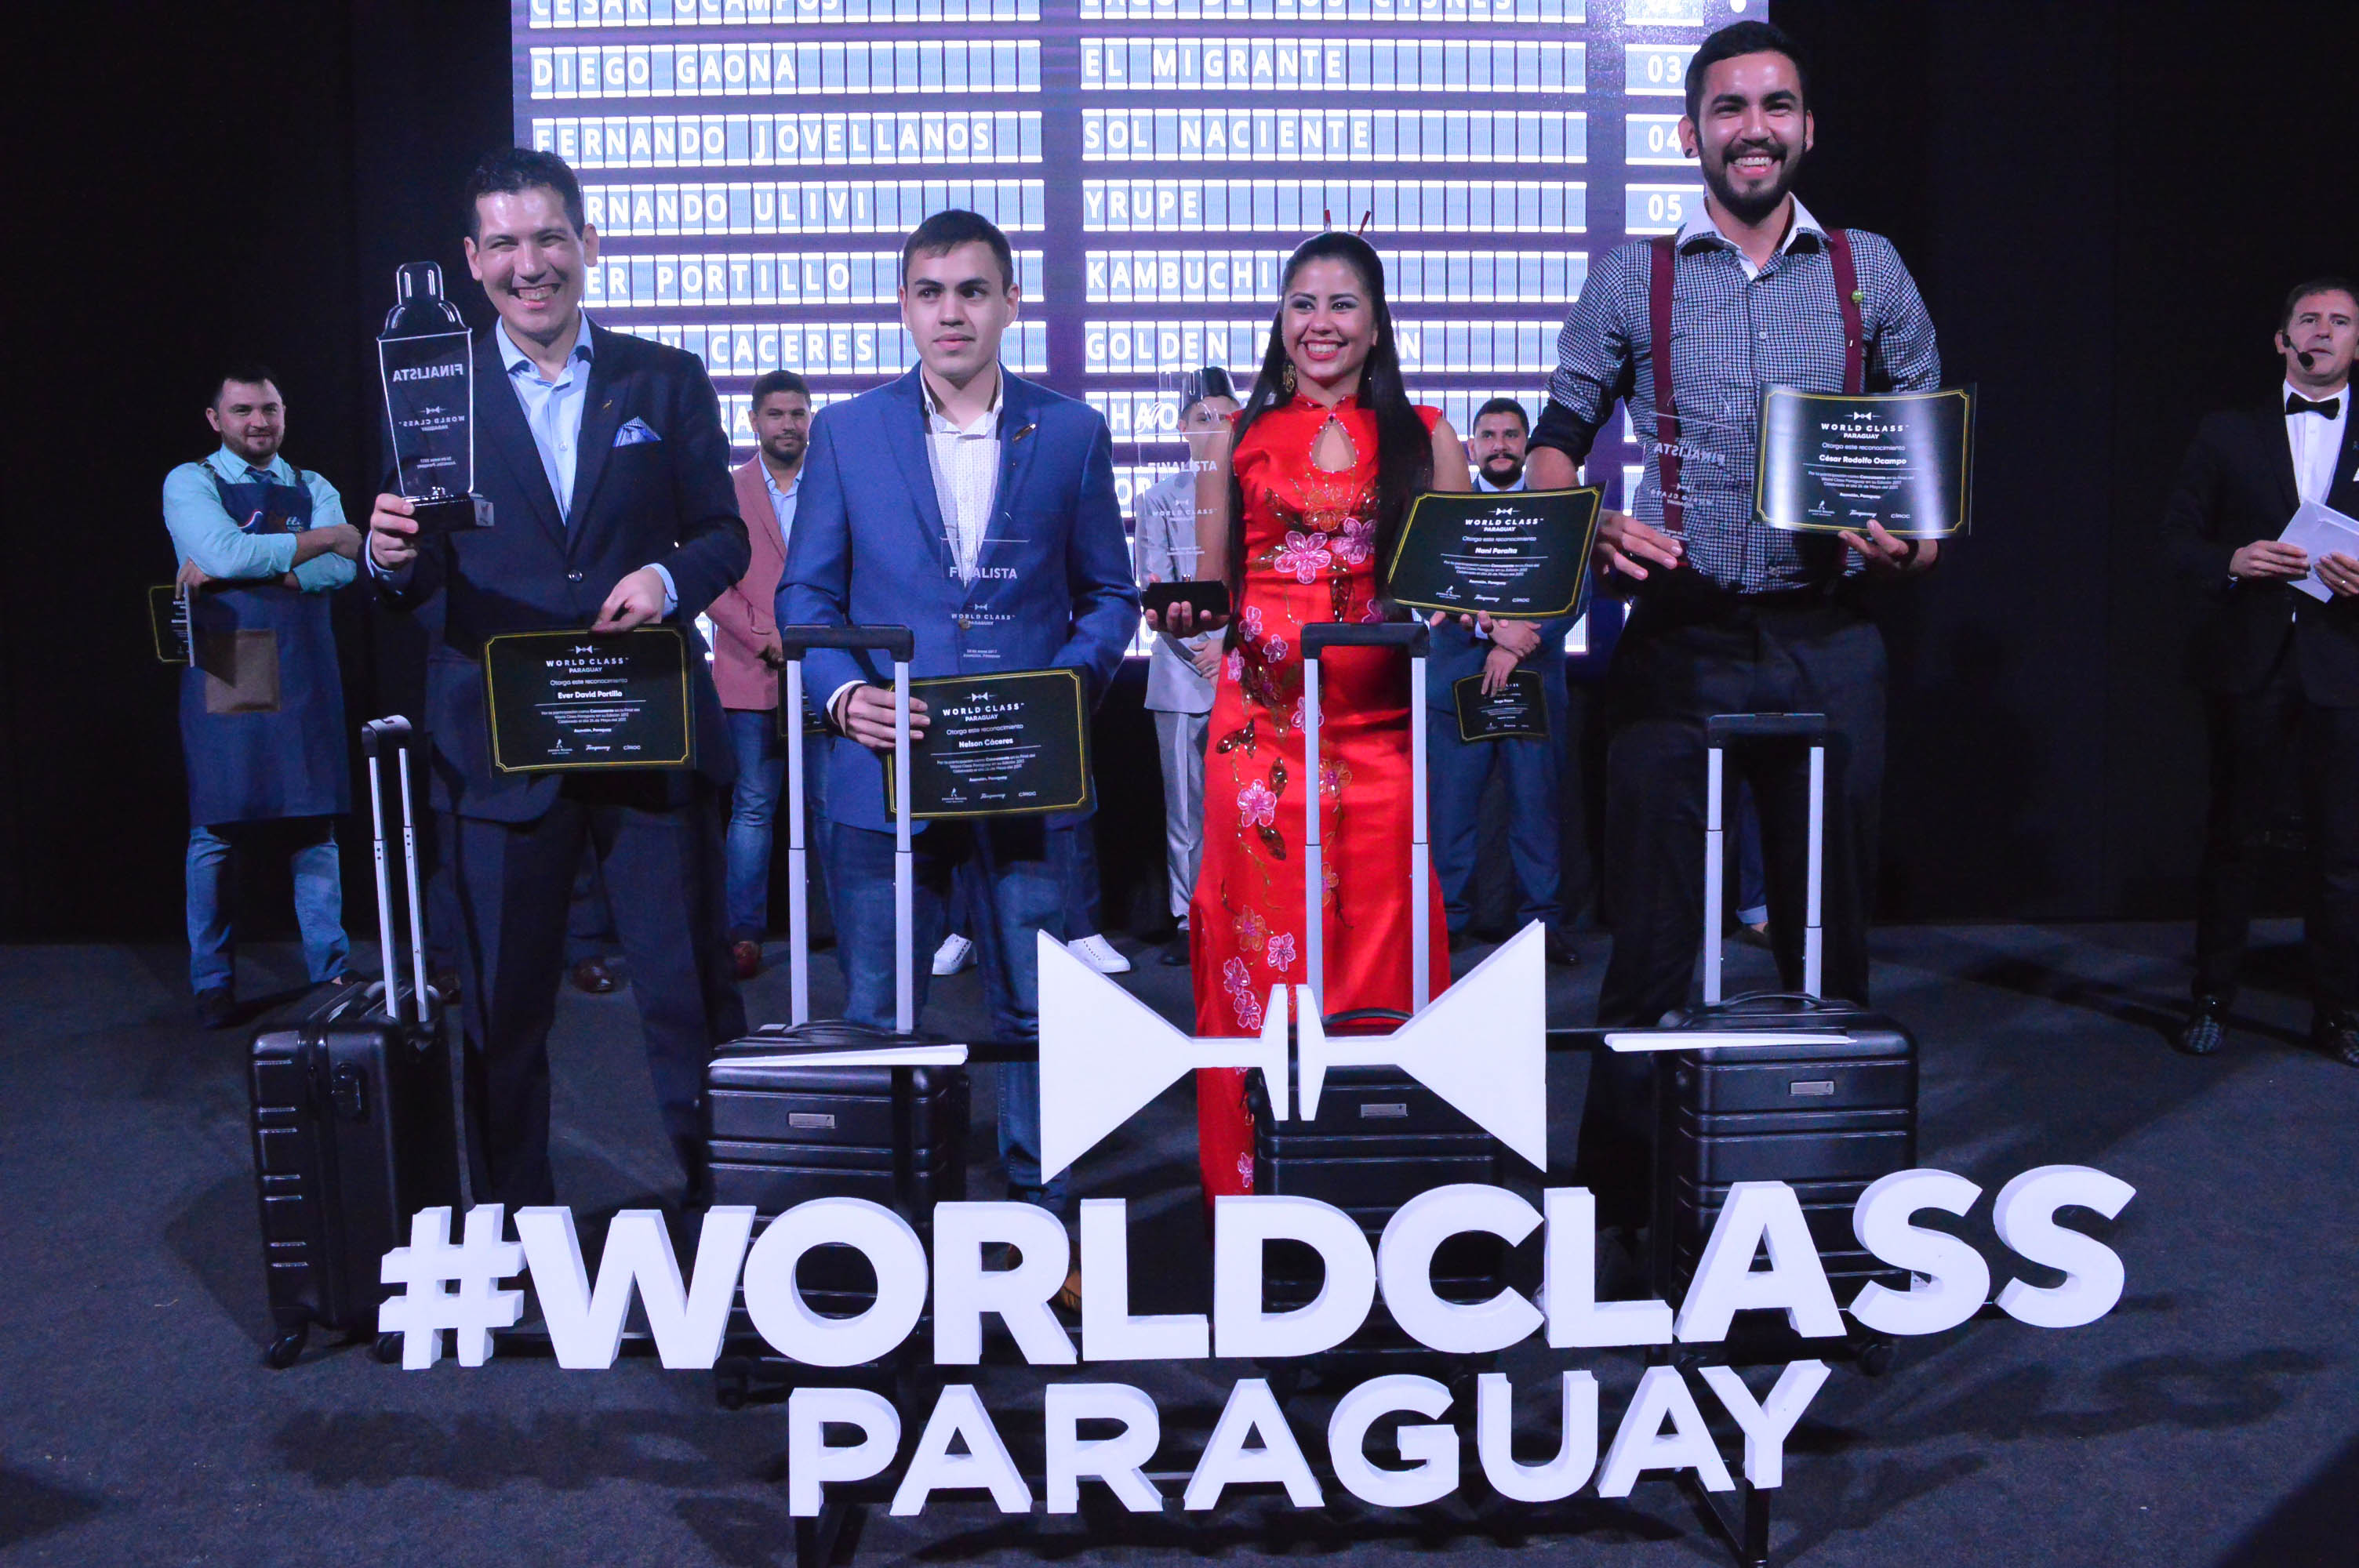 De izquierda a derecha: Ever Portillo (904), Nelson Cáceres (Morgan), Nani Peralta (1115) y César Ocampos (Brooklyn Hotel) con las valijas listas para viajar y representar a Paraguay en una competencia en Brasil